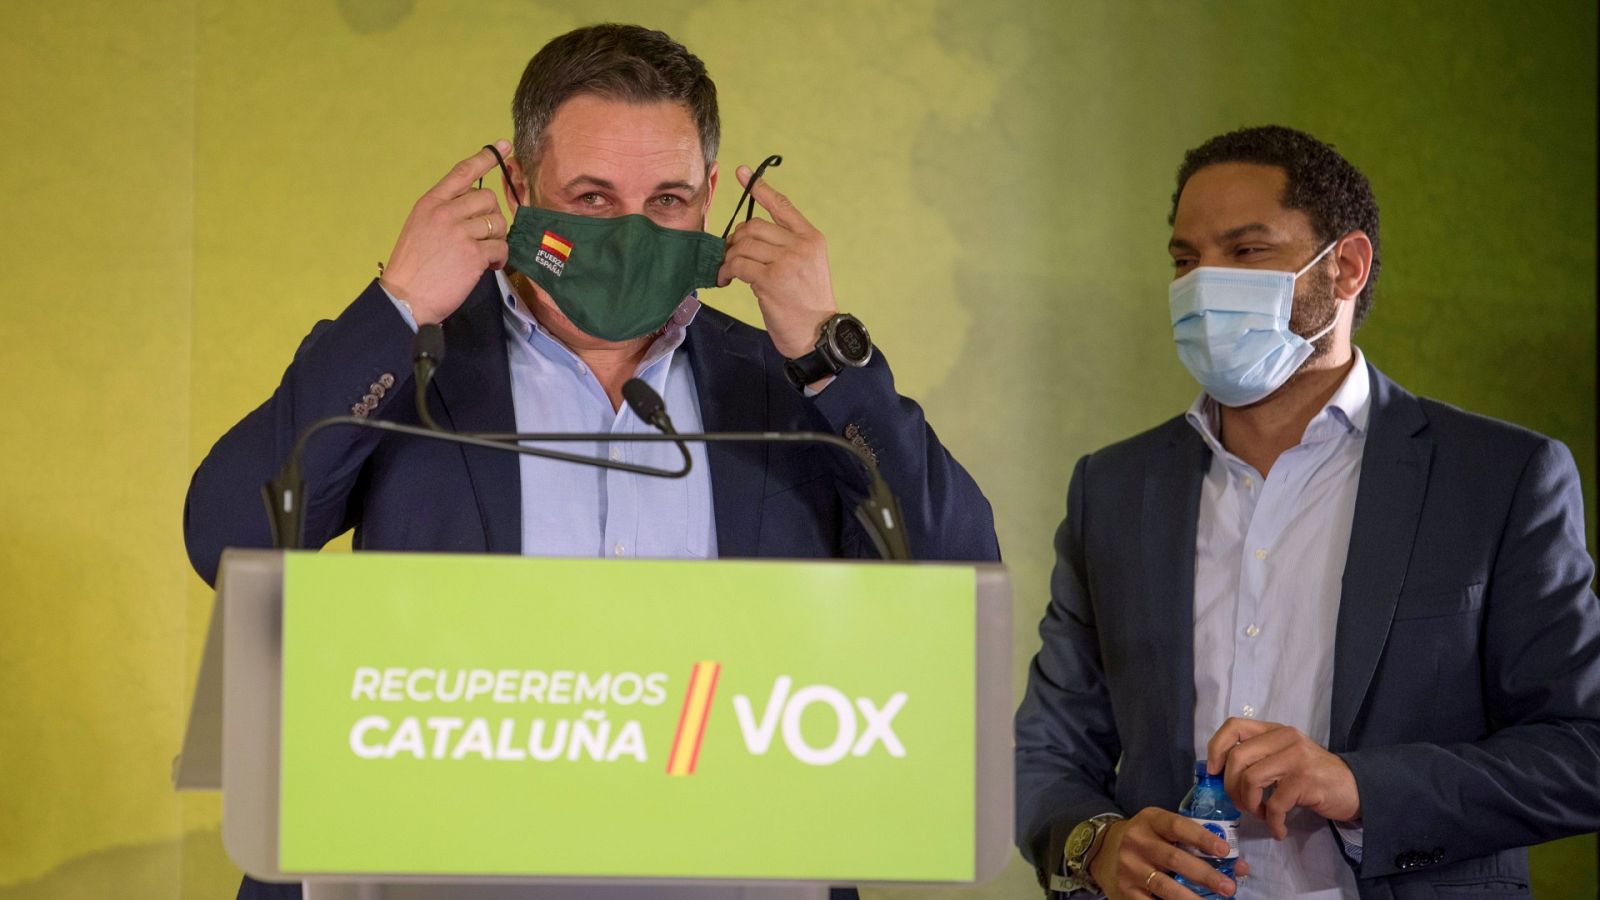 14F: Vox saca pecho como líder de la derecha catalana en la oposición frente a Cs y PP